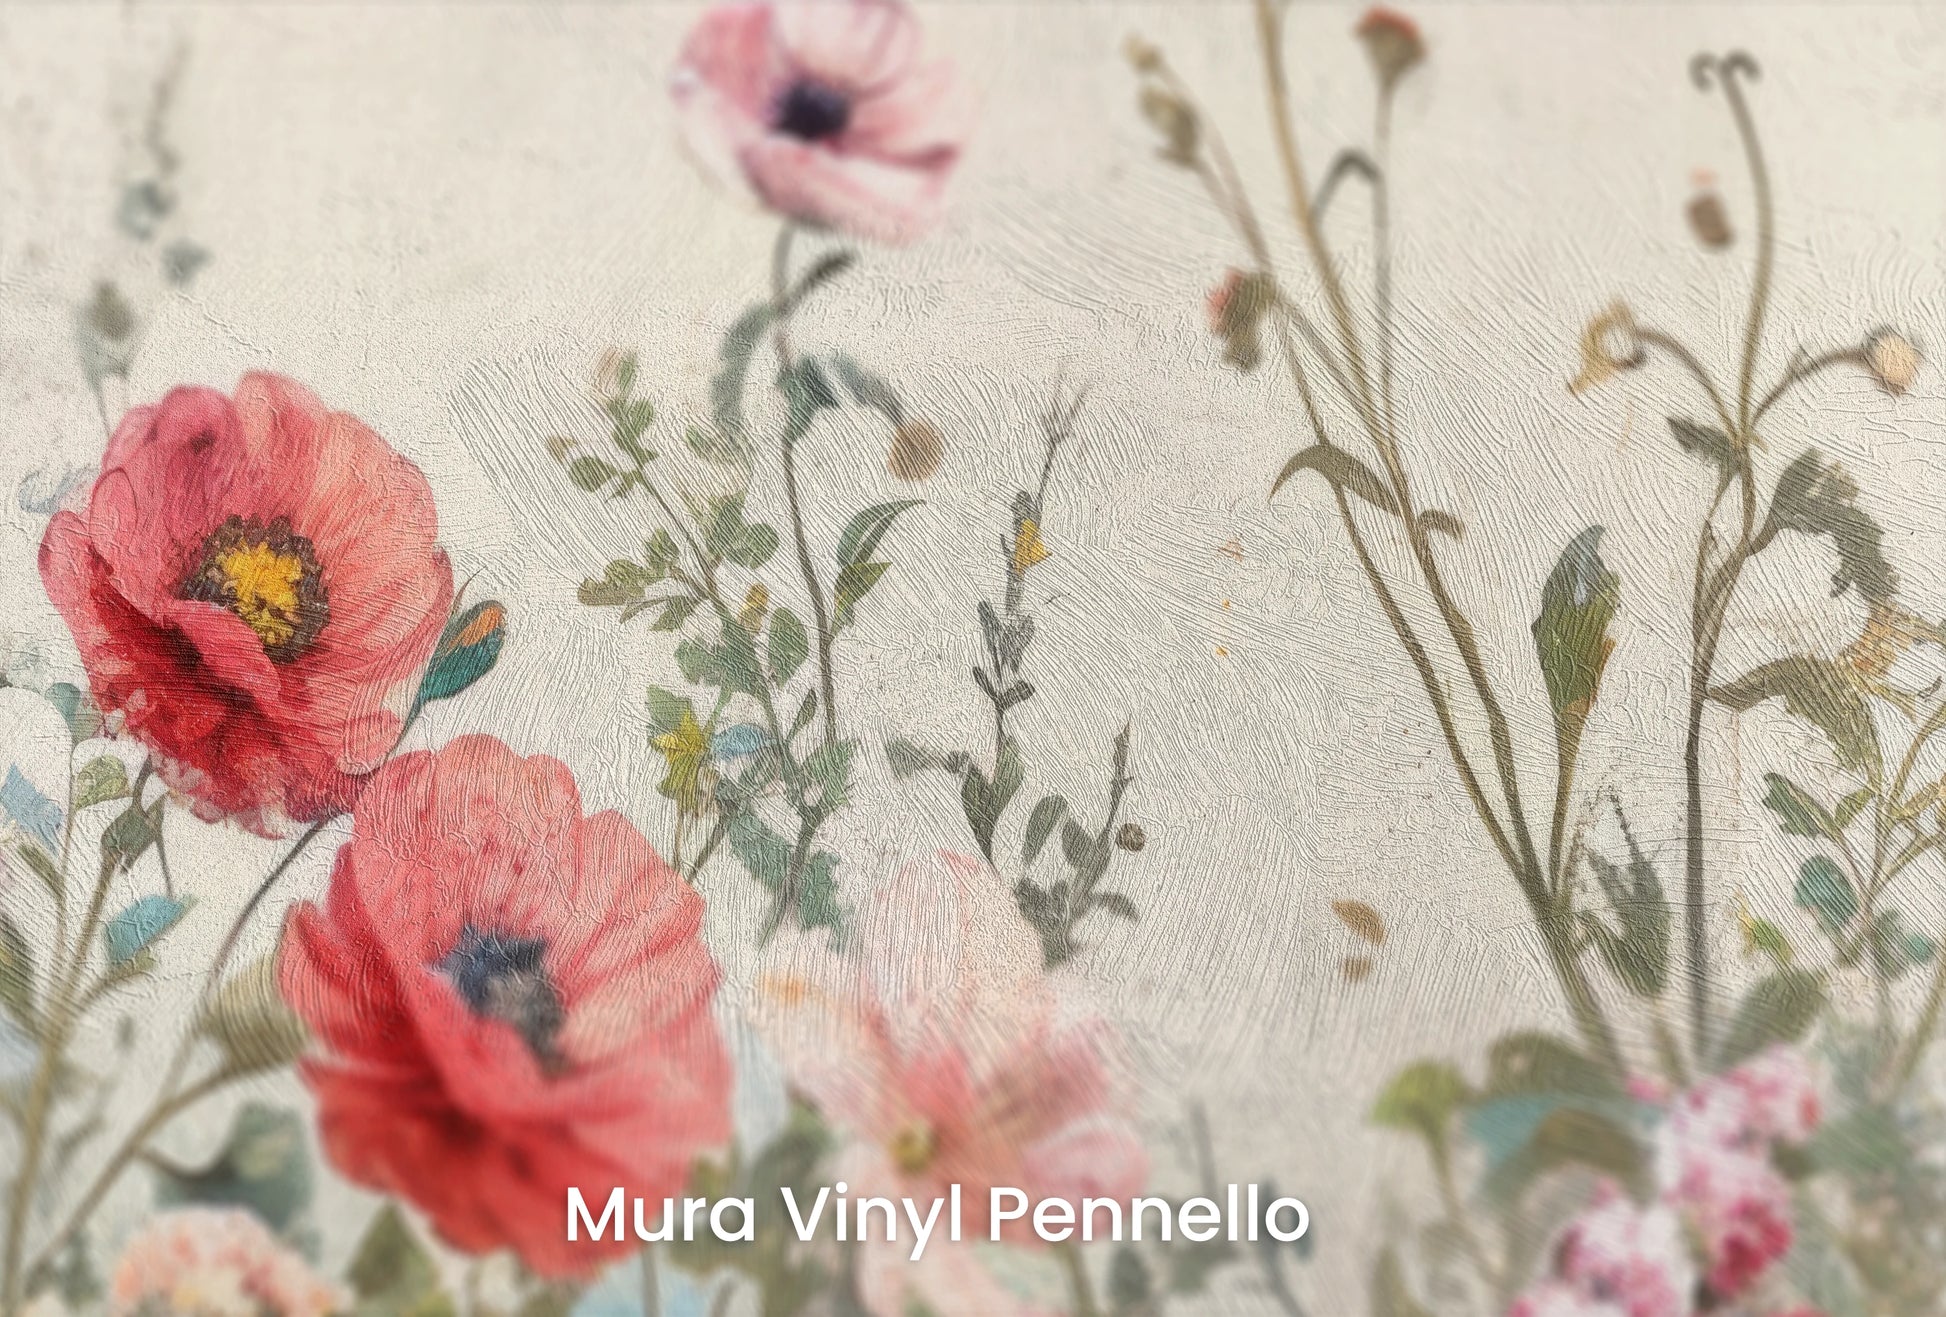 Zbliżenie na artystyczną fototapetę o nazwie VividField na podłożu Mura Vinyl Pennello - faktura pociągnięć pędzla malarskiego.